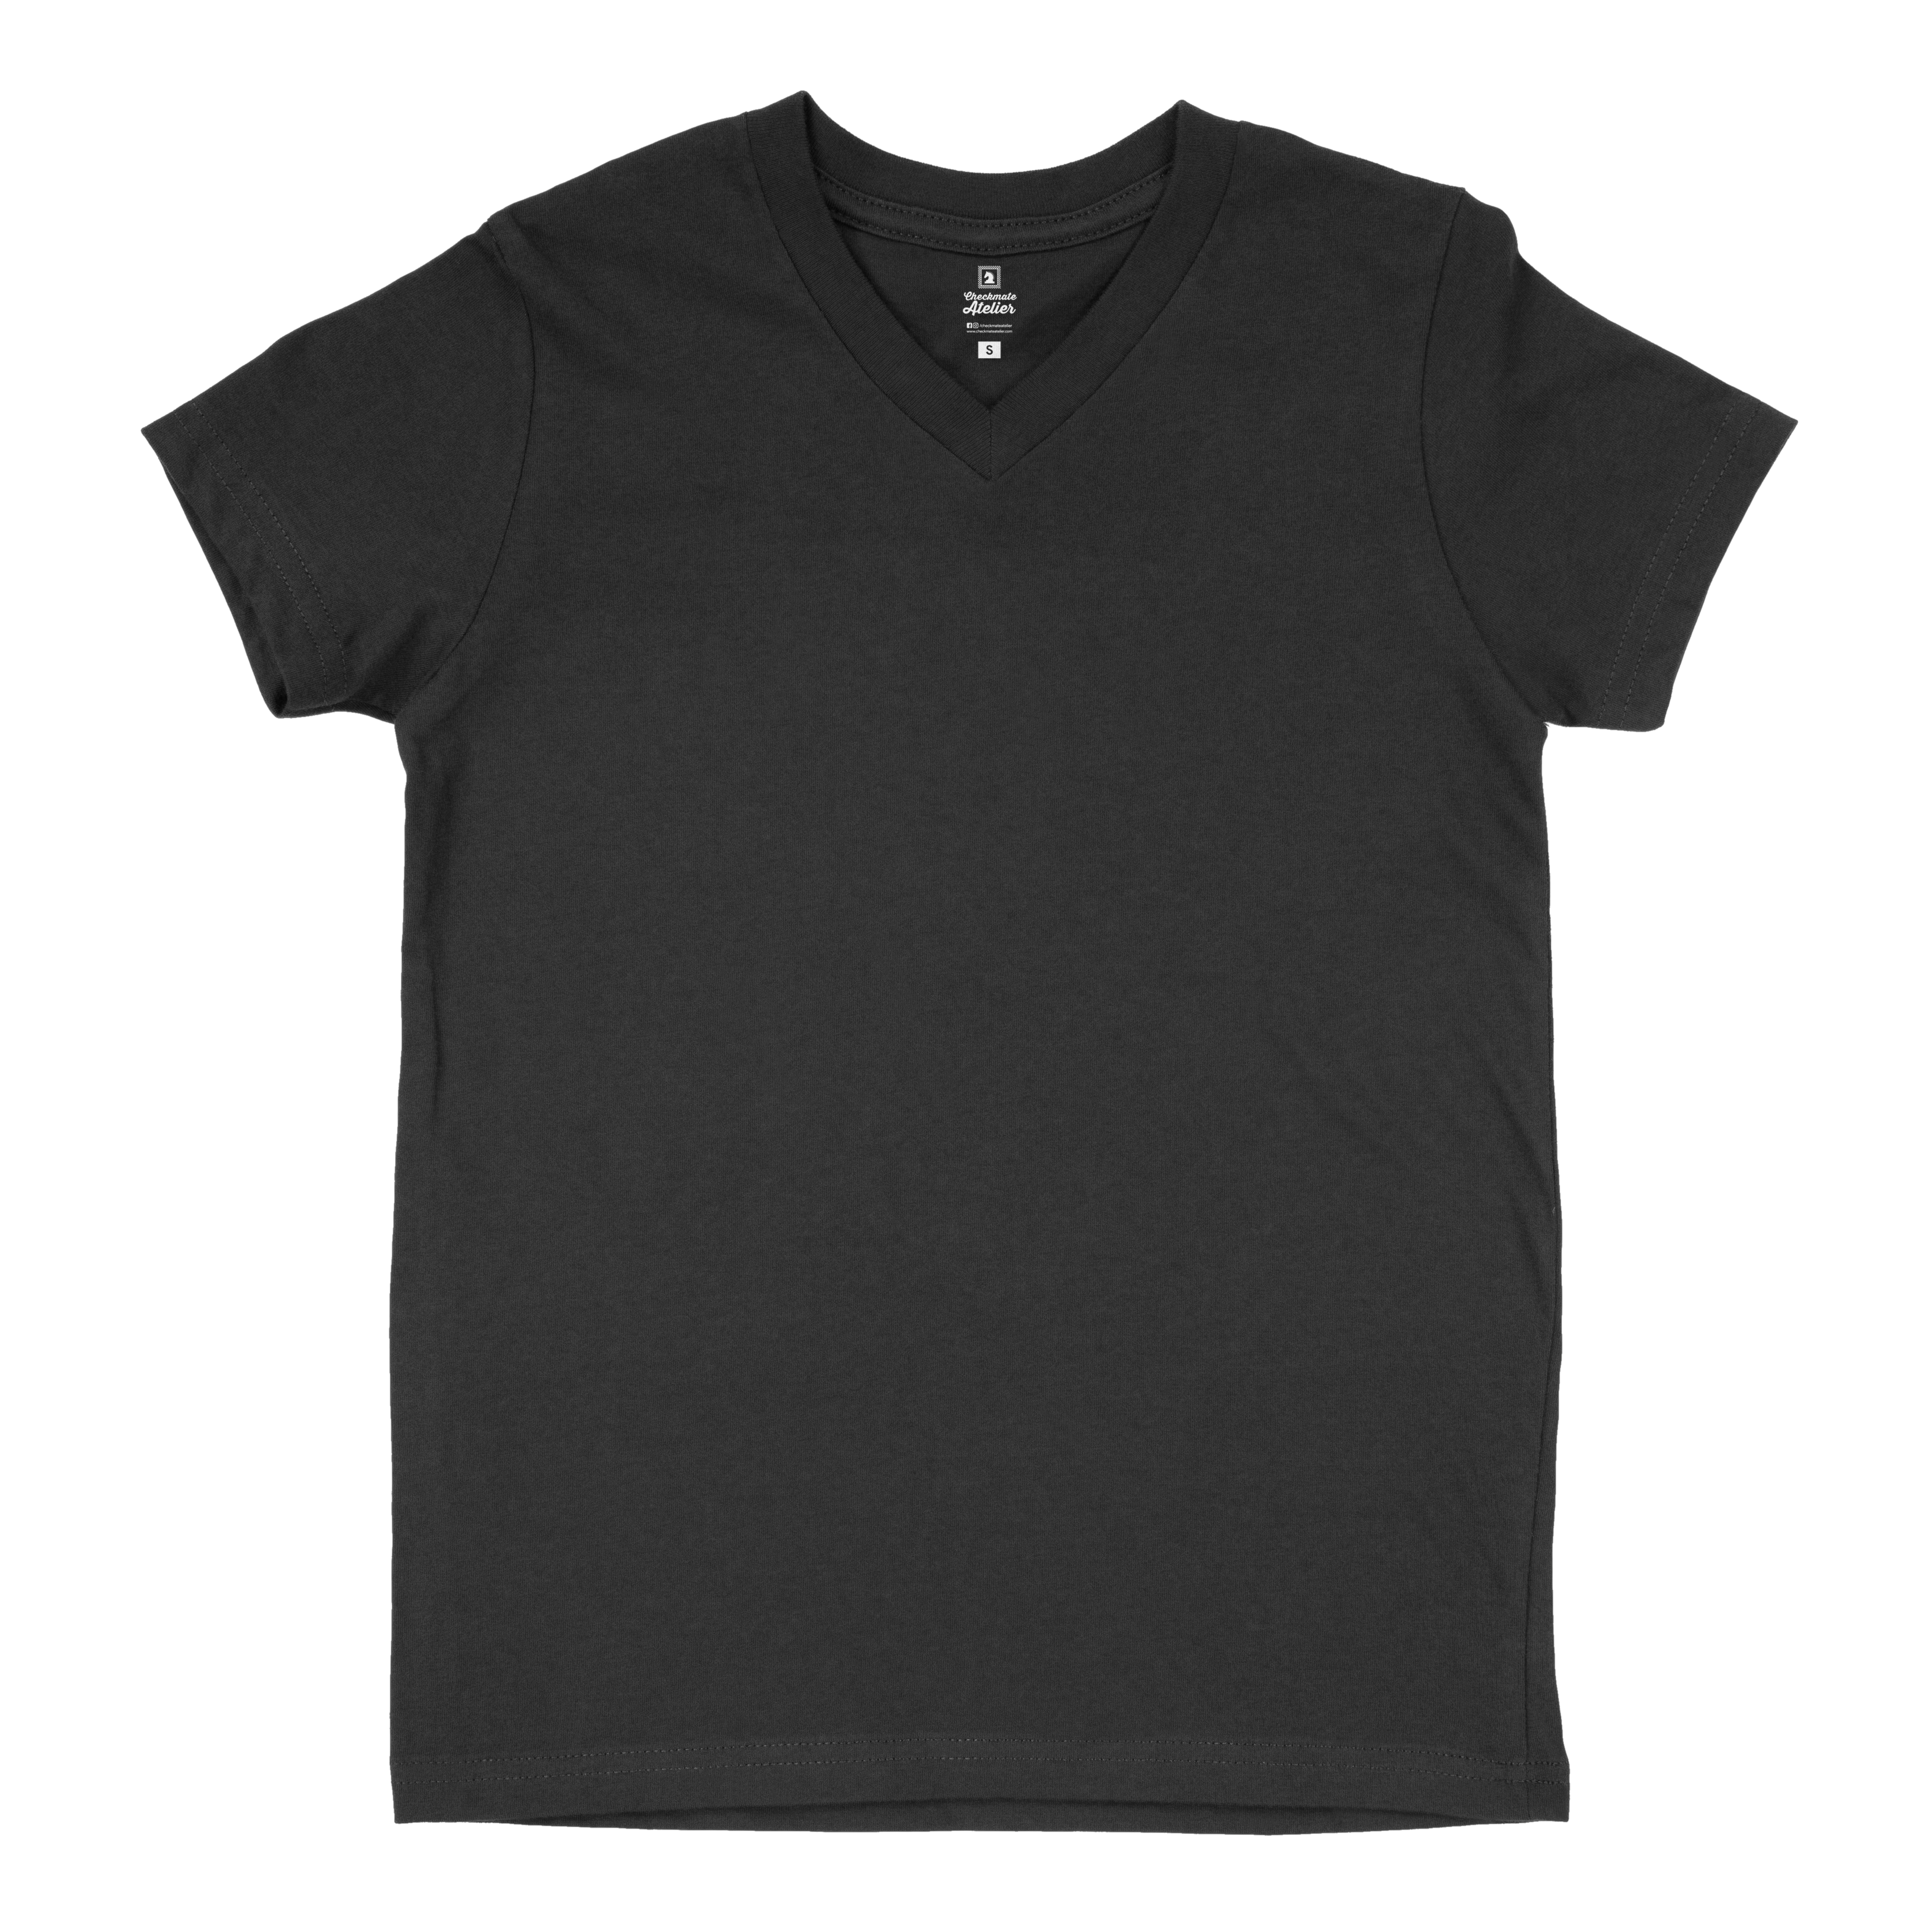 Black V-Neck T-Shirts (2XL - 3XL) - Shop Now - Checkmate Atelier